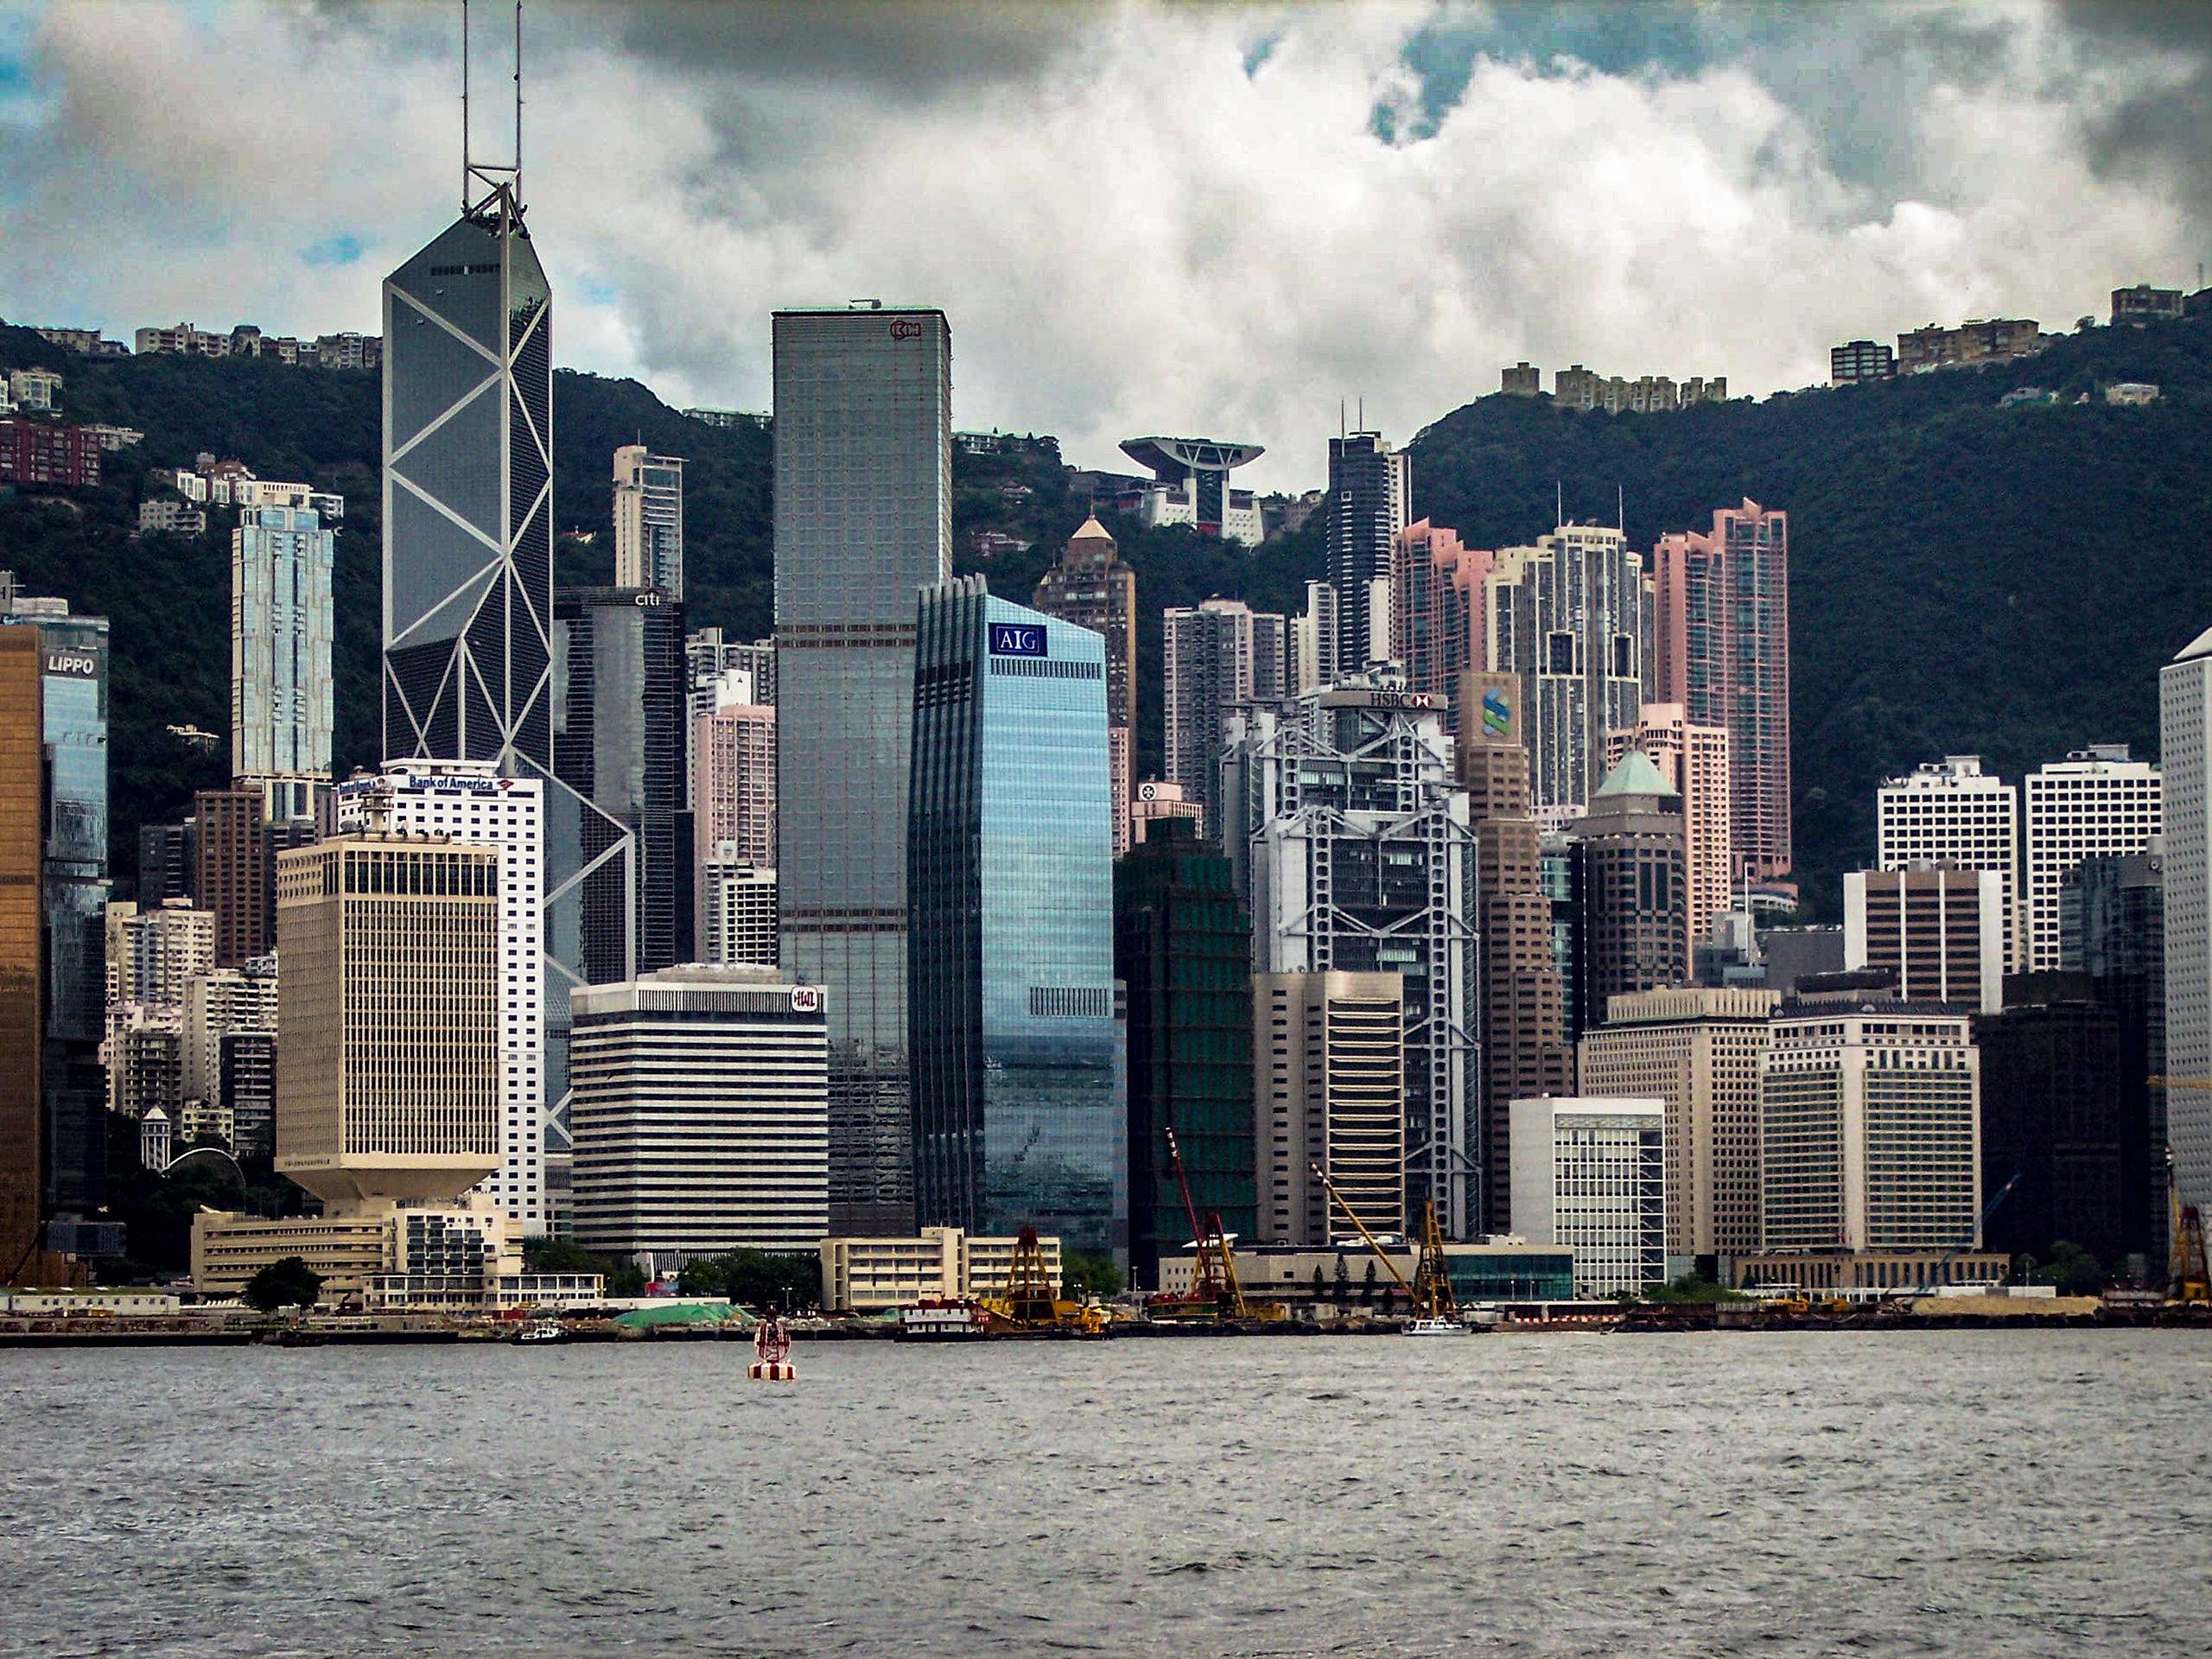 香港是全球最發達的城市之一，也是世界主要的金融和製造業中心，綠色和平呼籲當局作為城市領頭羊，以更積極的政策展現應對氣候危機的決心。